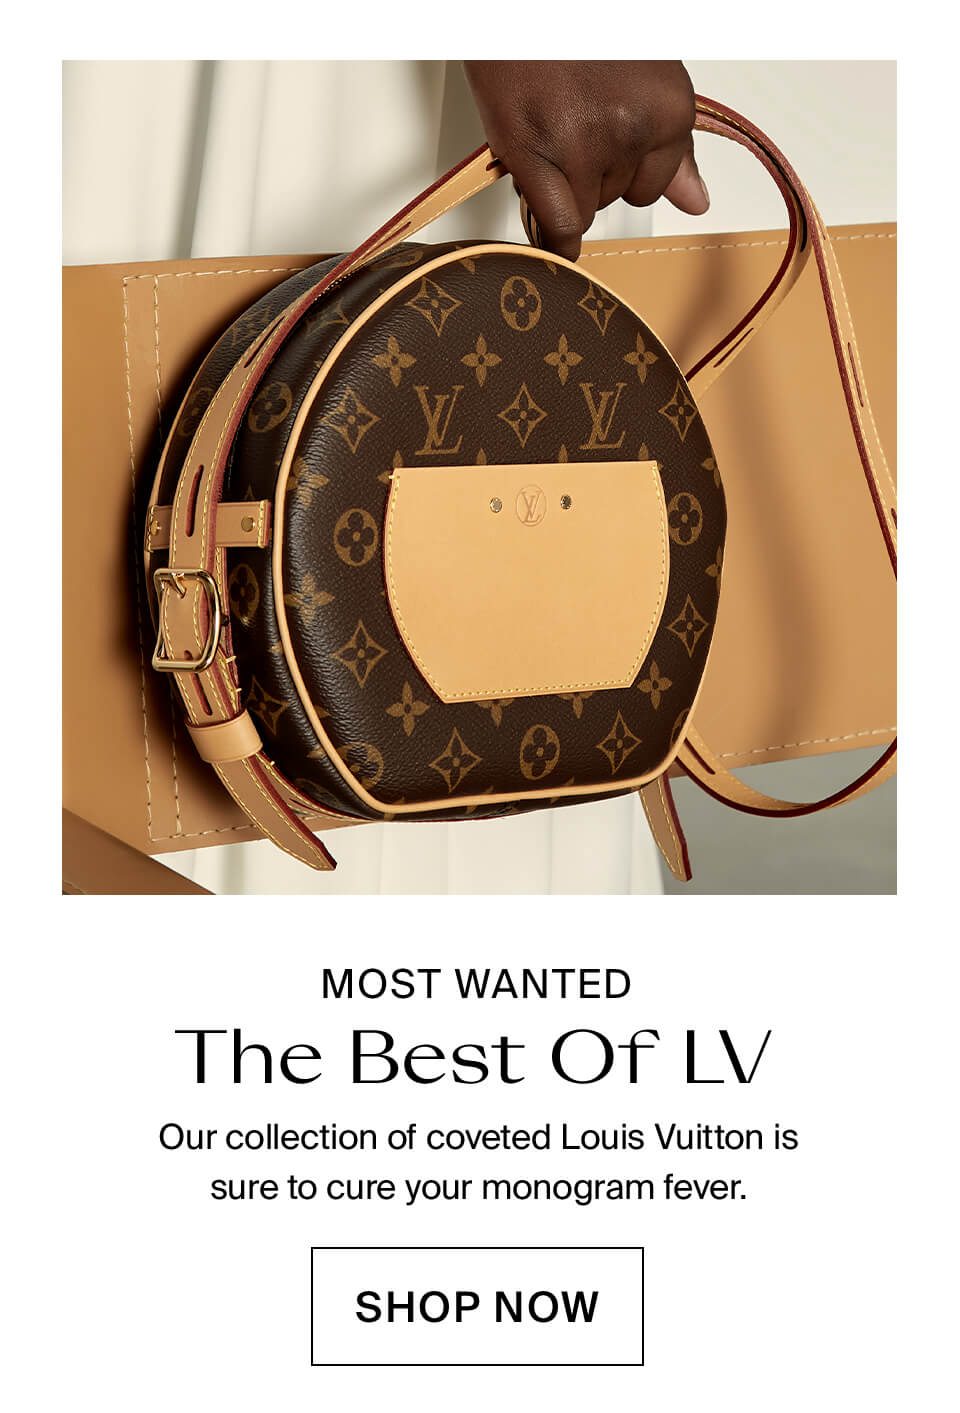 The Louis Vuitton Edit